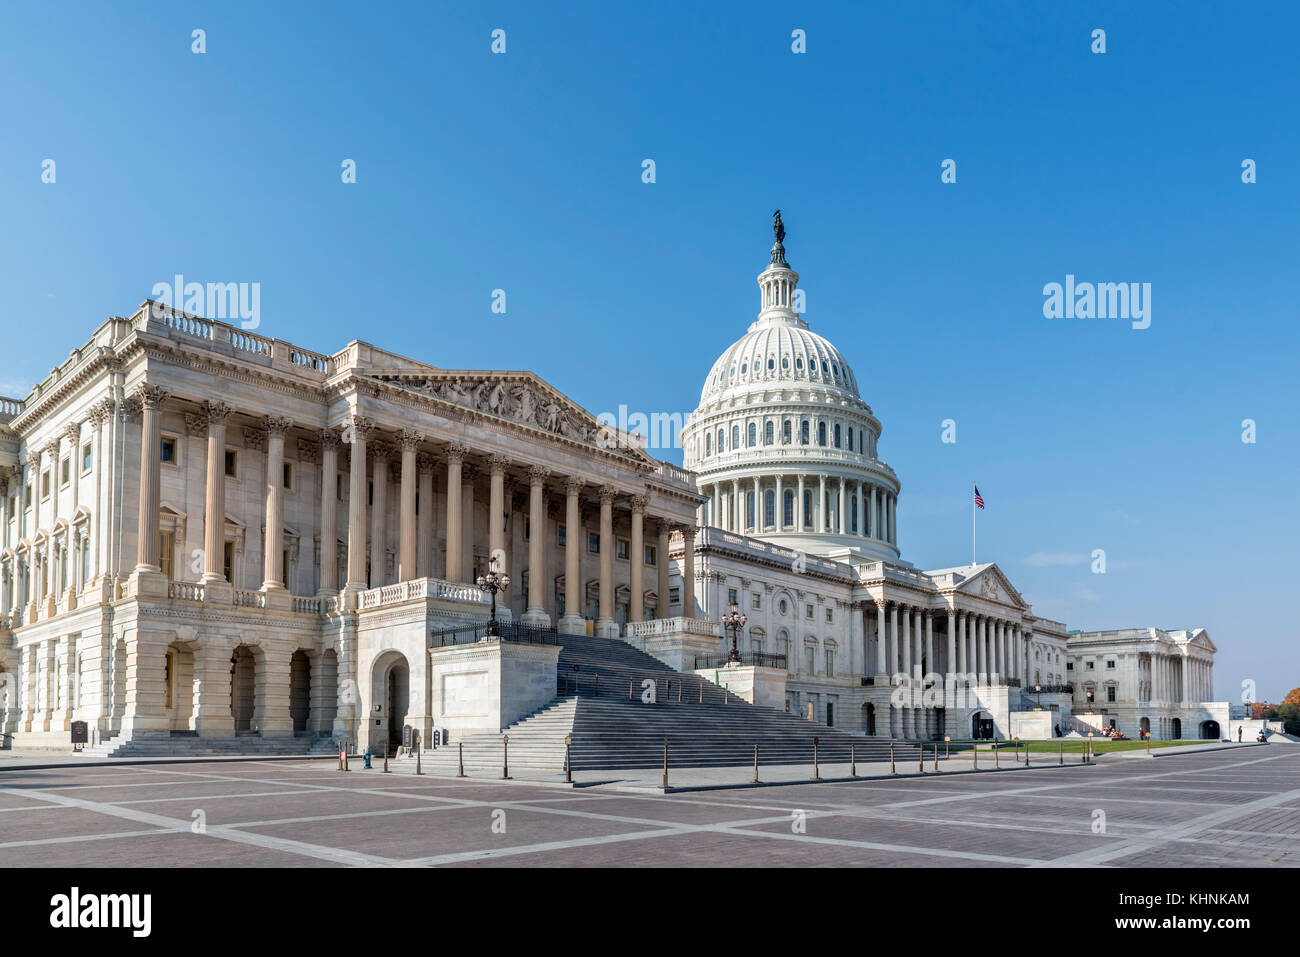 La fachada oriental del Capitolio de los Estados Unidos, Washington DC, EE.UU. Foto de stock